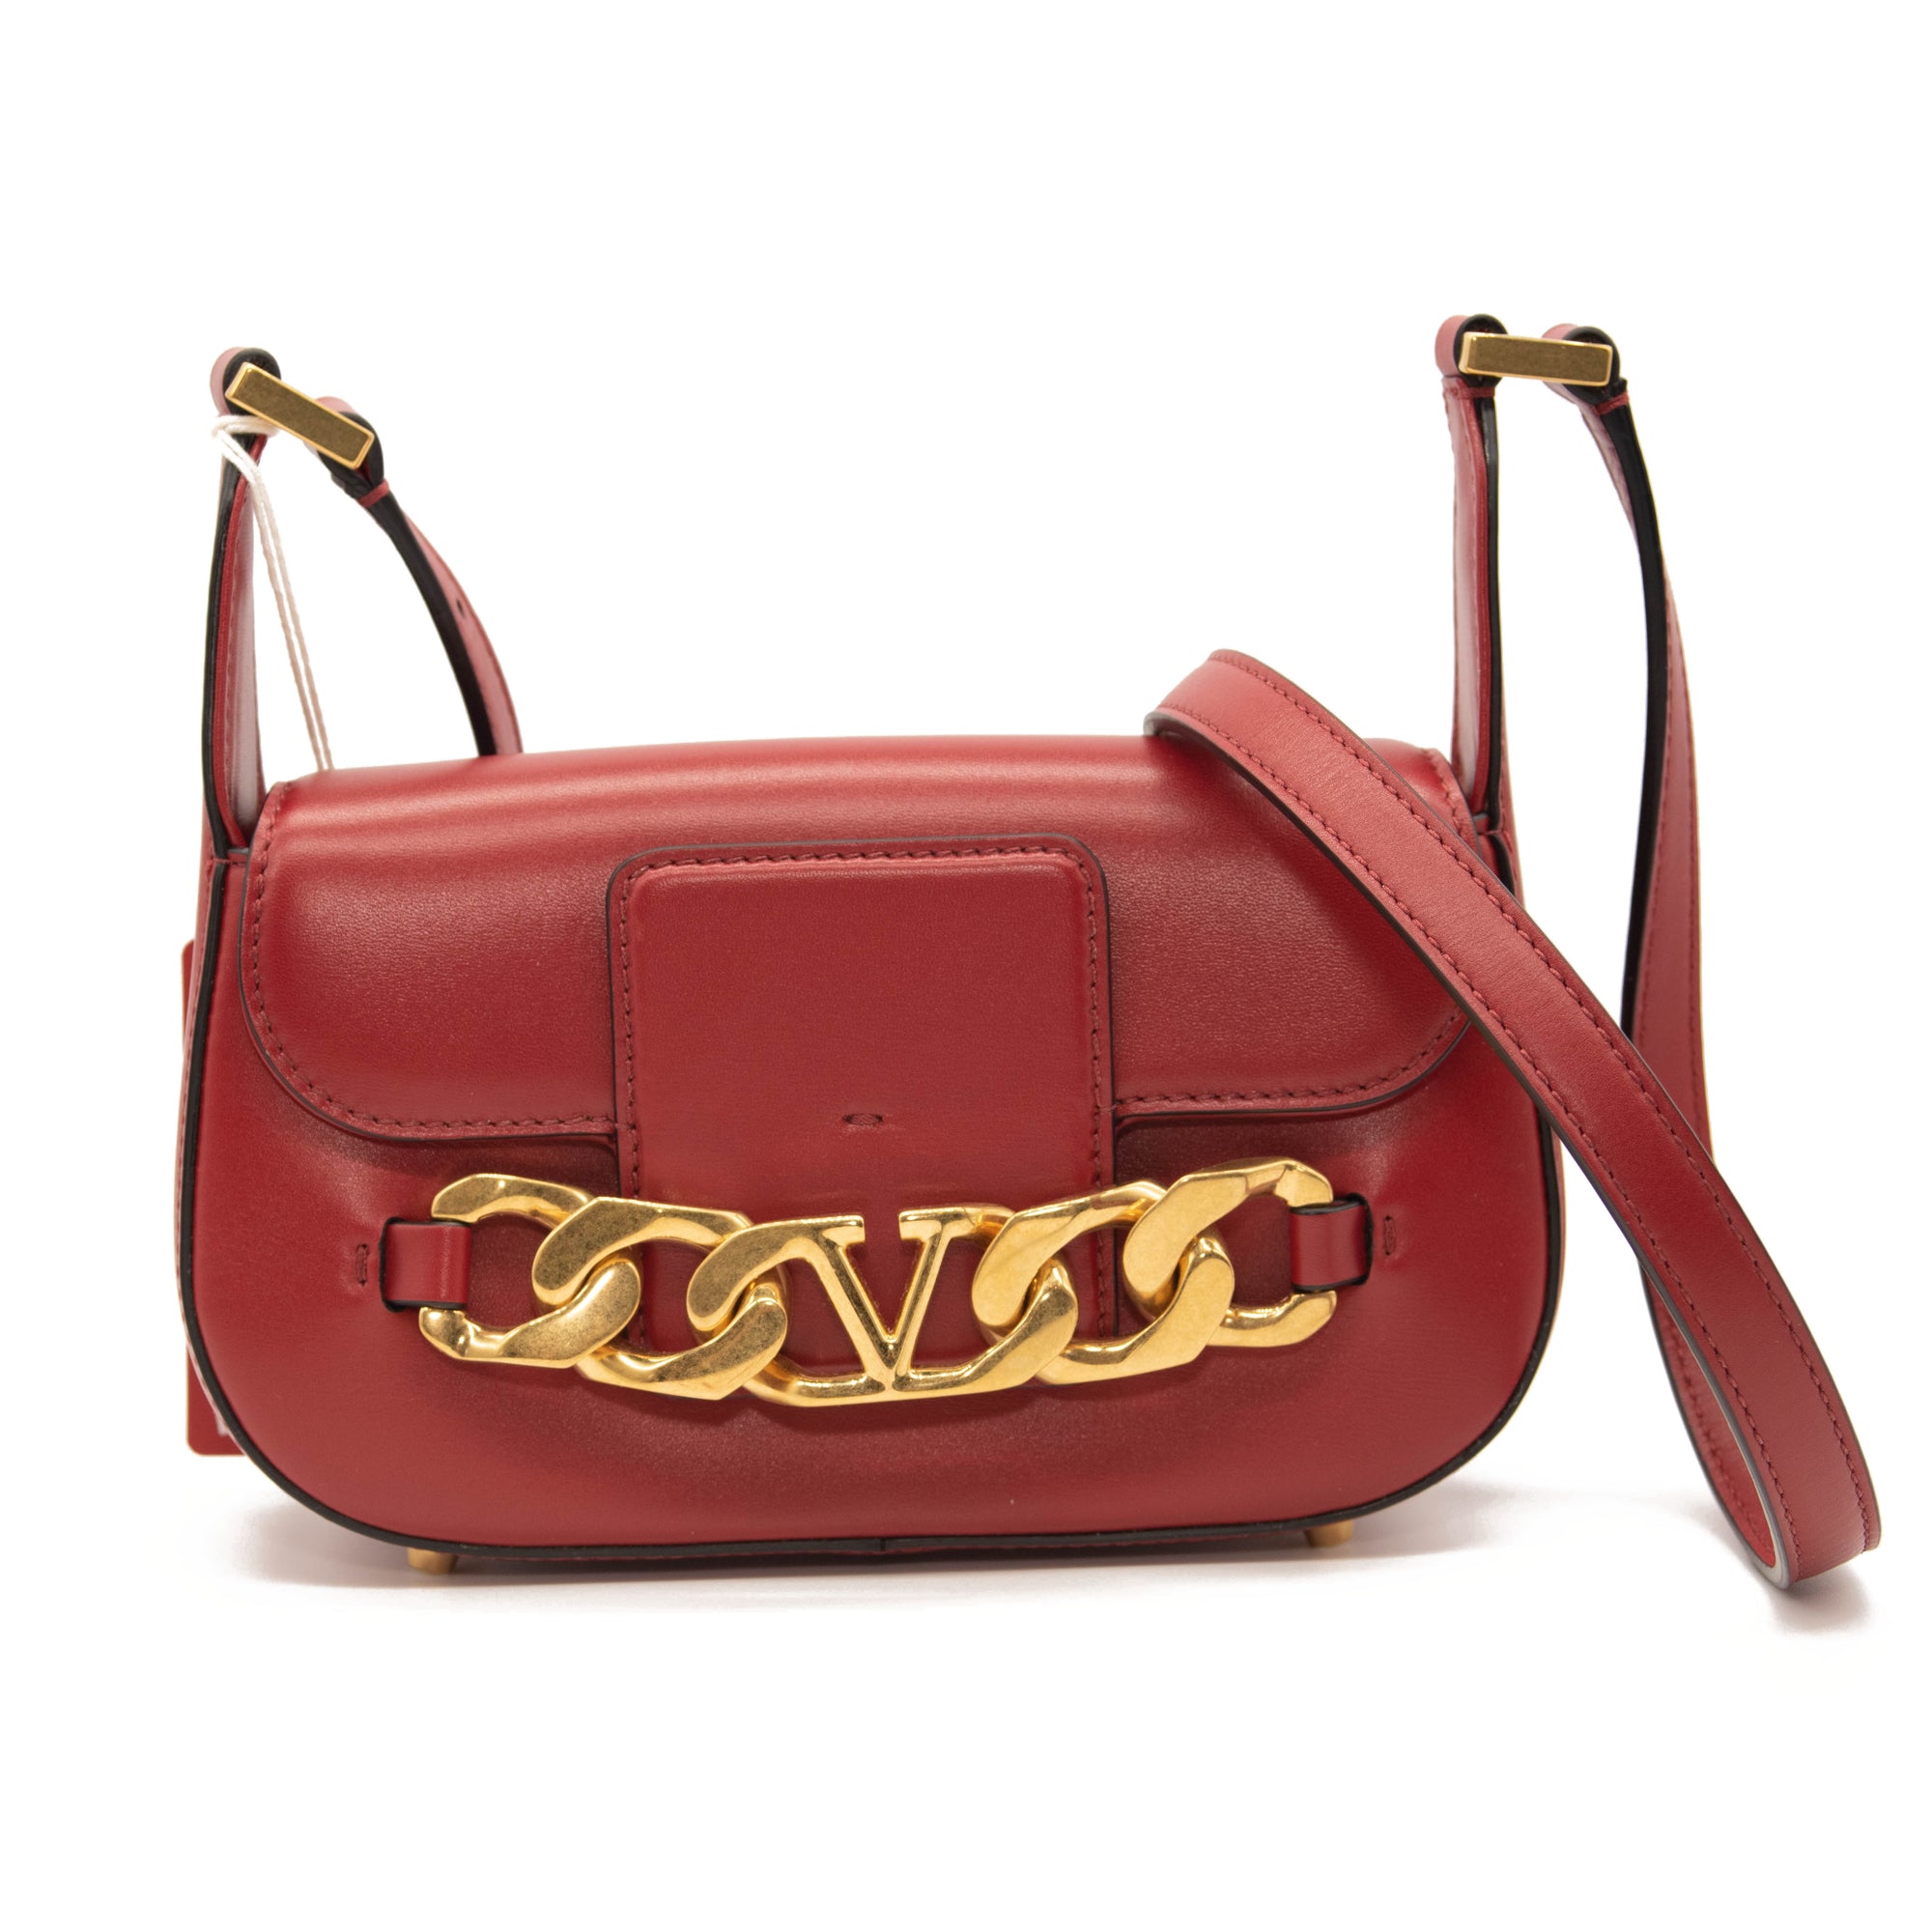 Shoulder bags Valentino Garavani - Supervee red leather bag